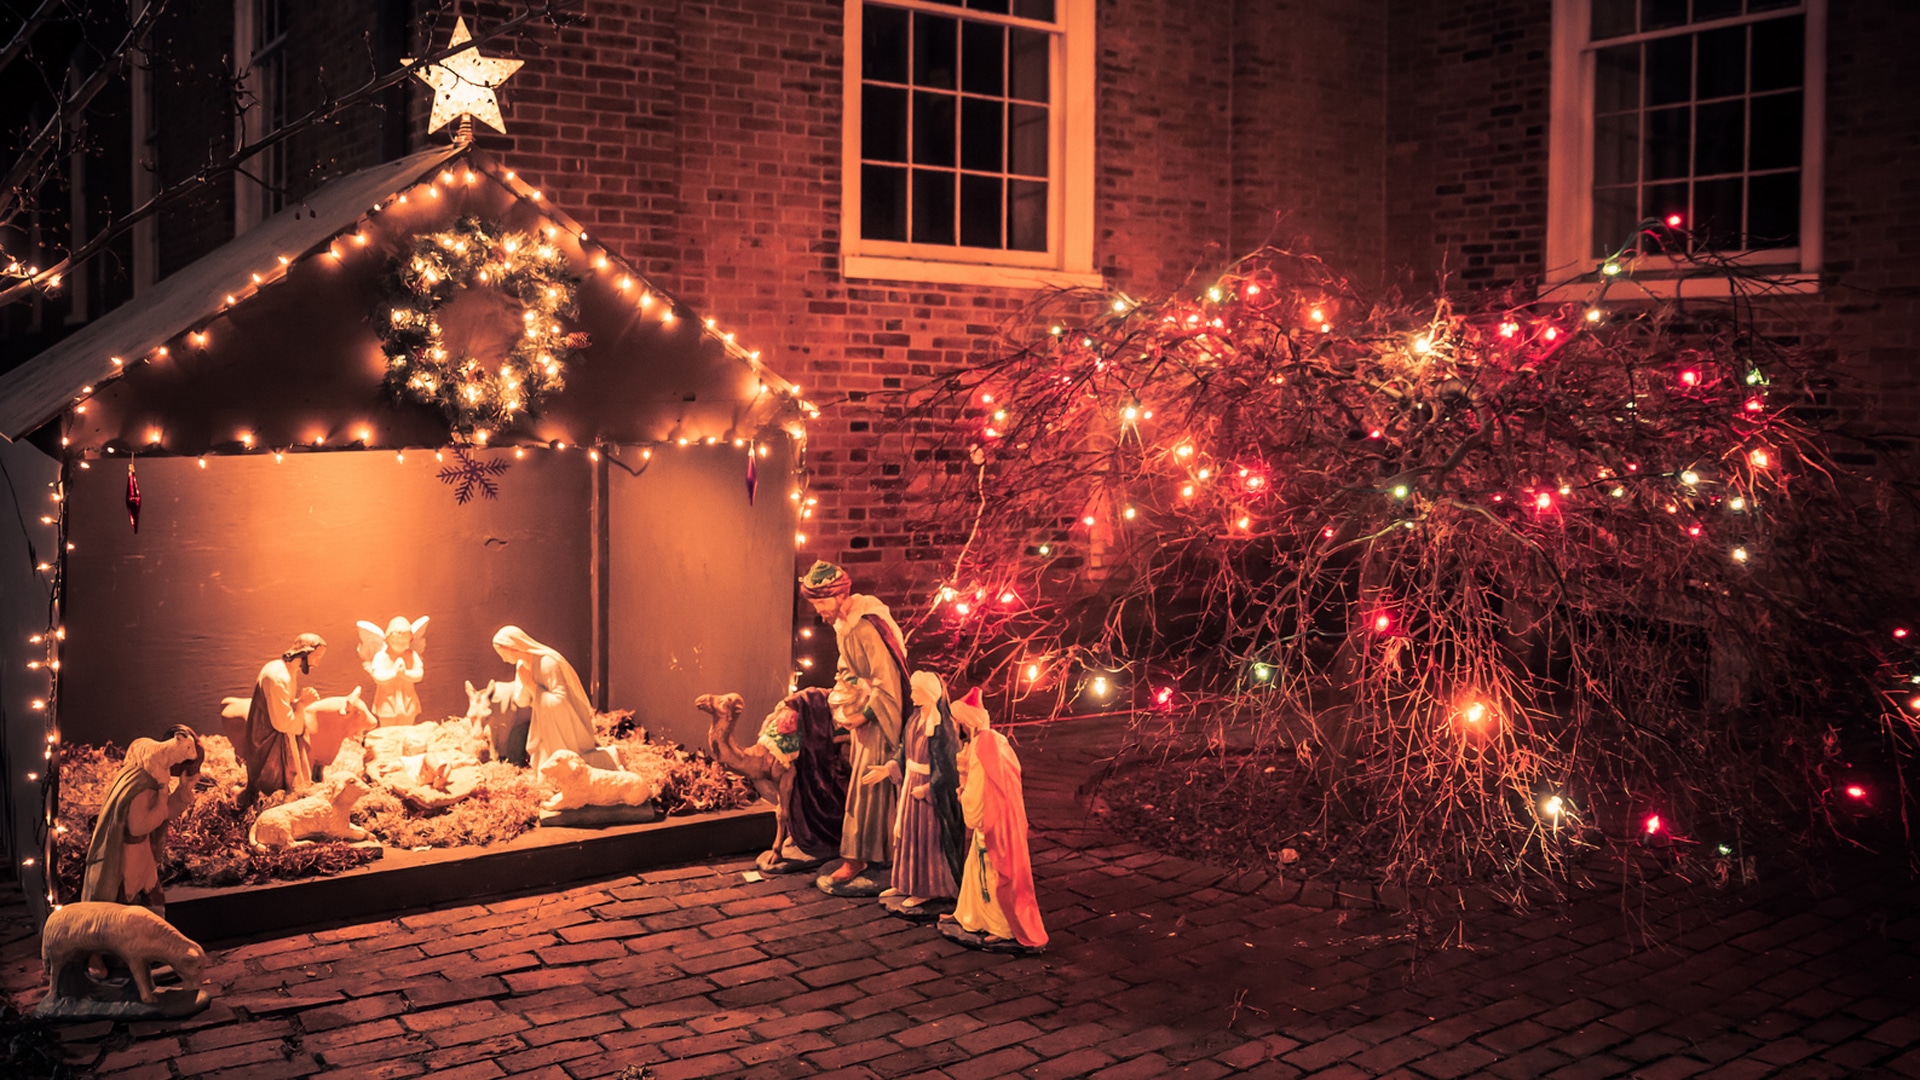 Wie kann man sinnvoll und verantwortungsbewusst Weihnachten feiern: Das fragen sich viele Gemeinden in diesem Jahr.